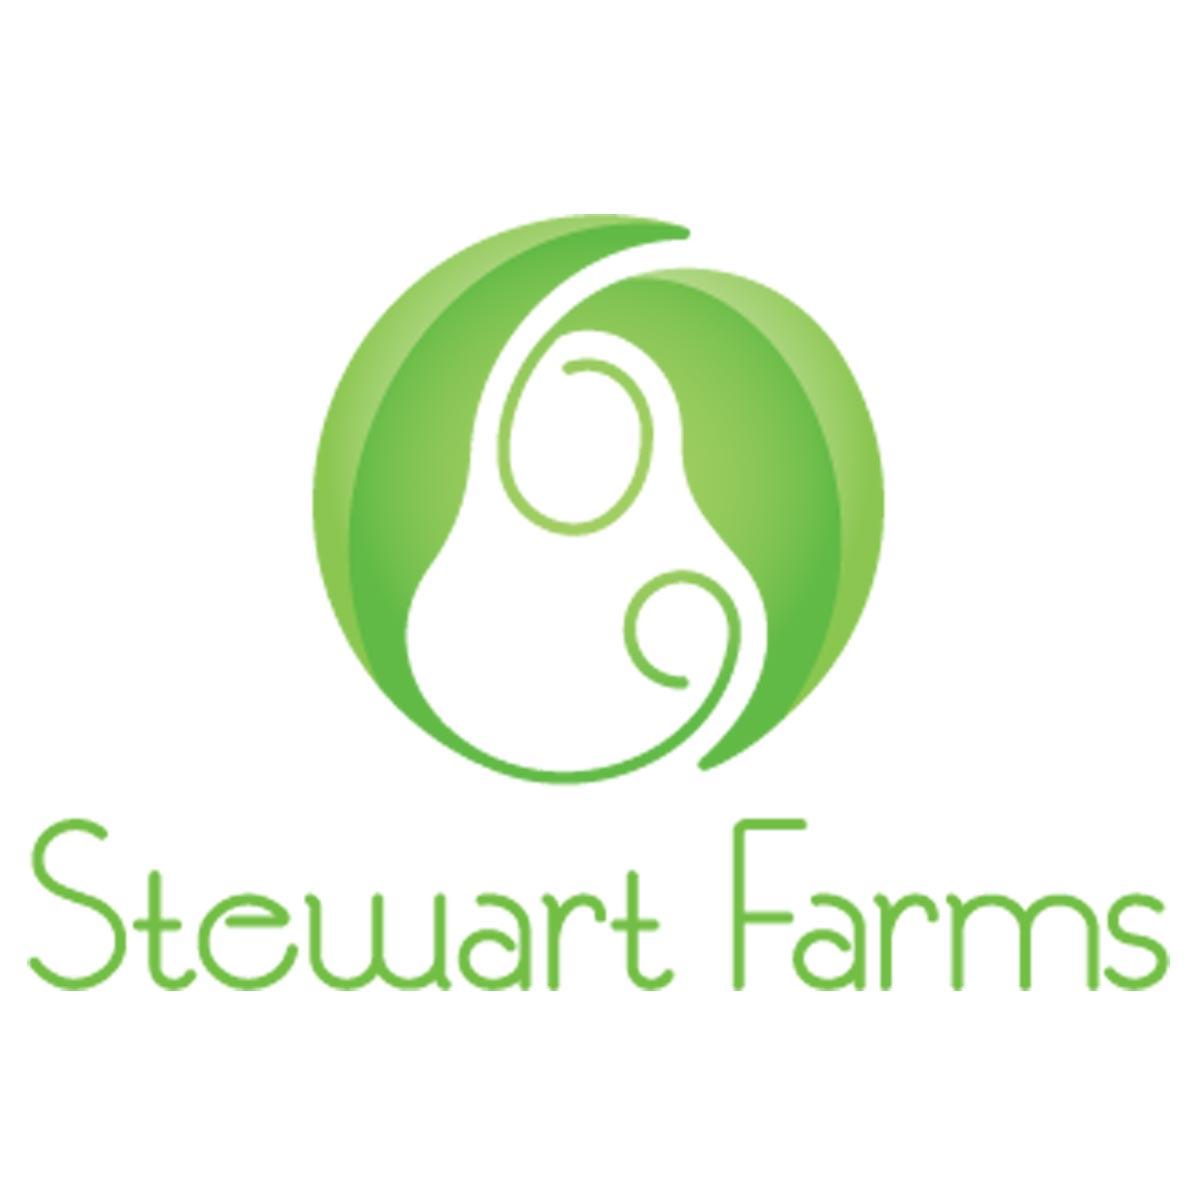 Stewart Farms